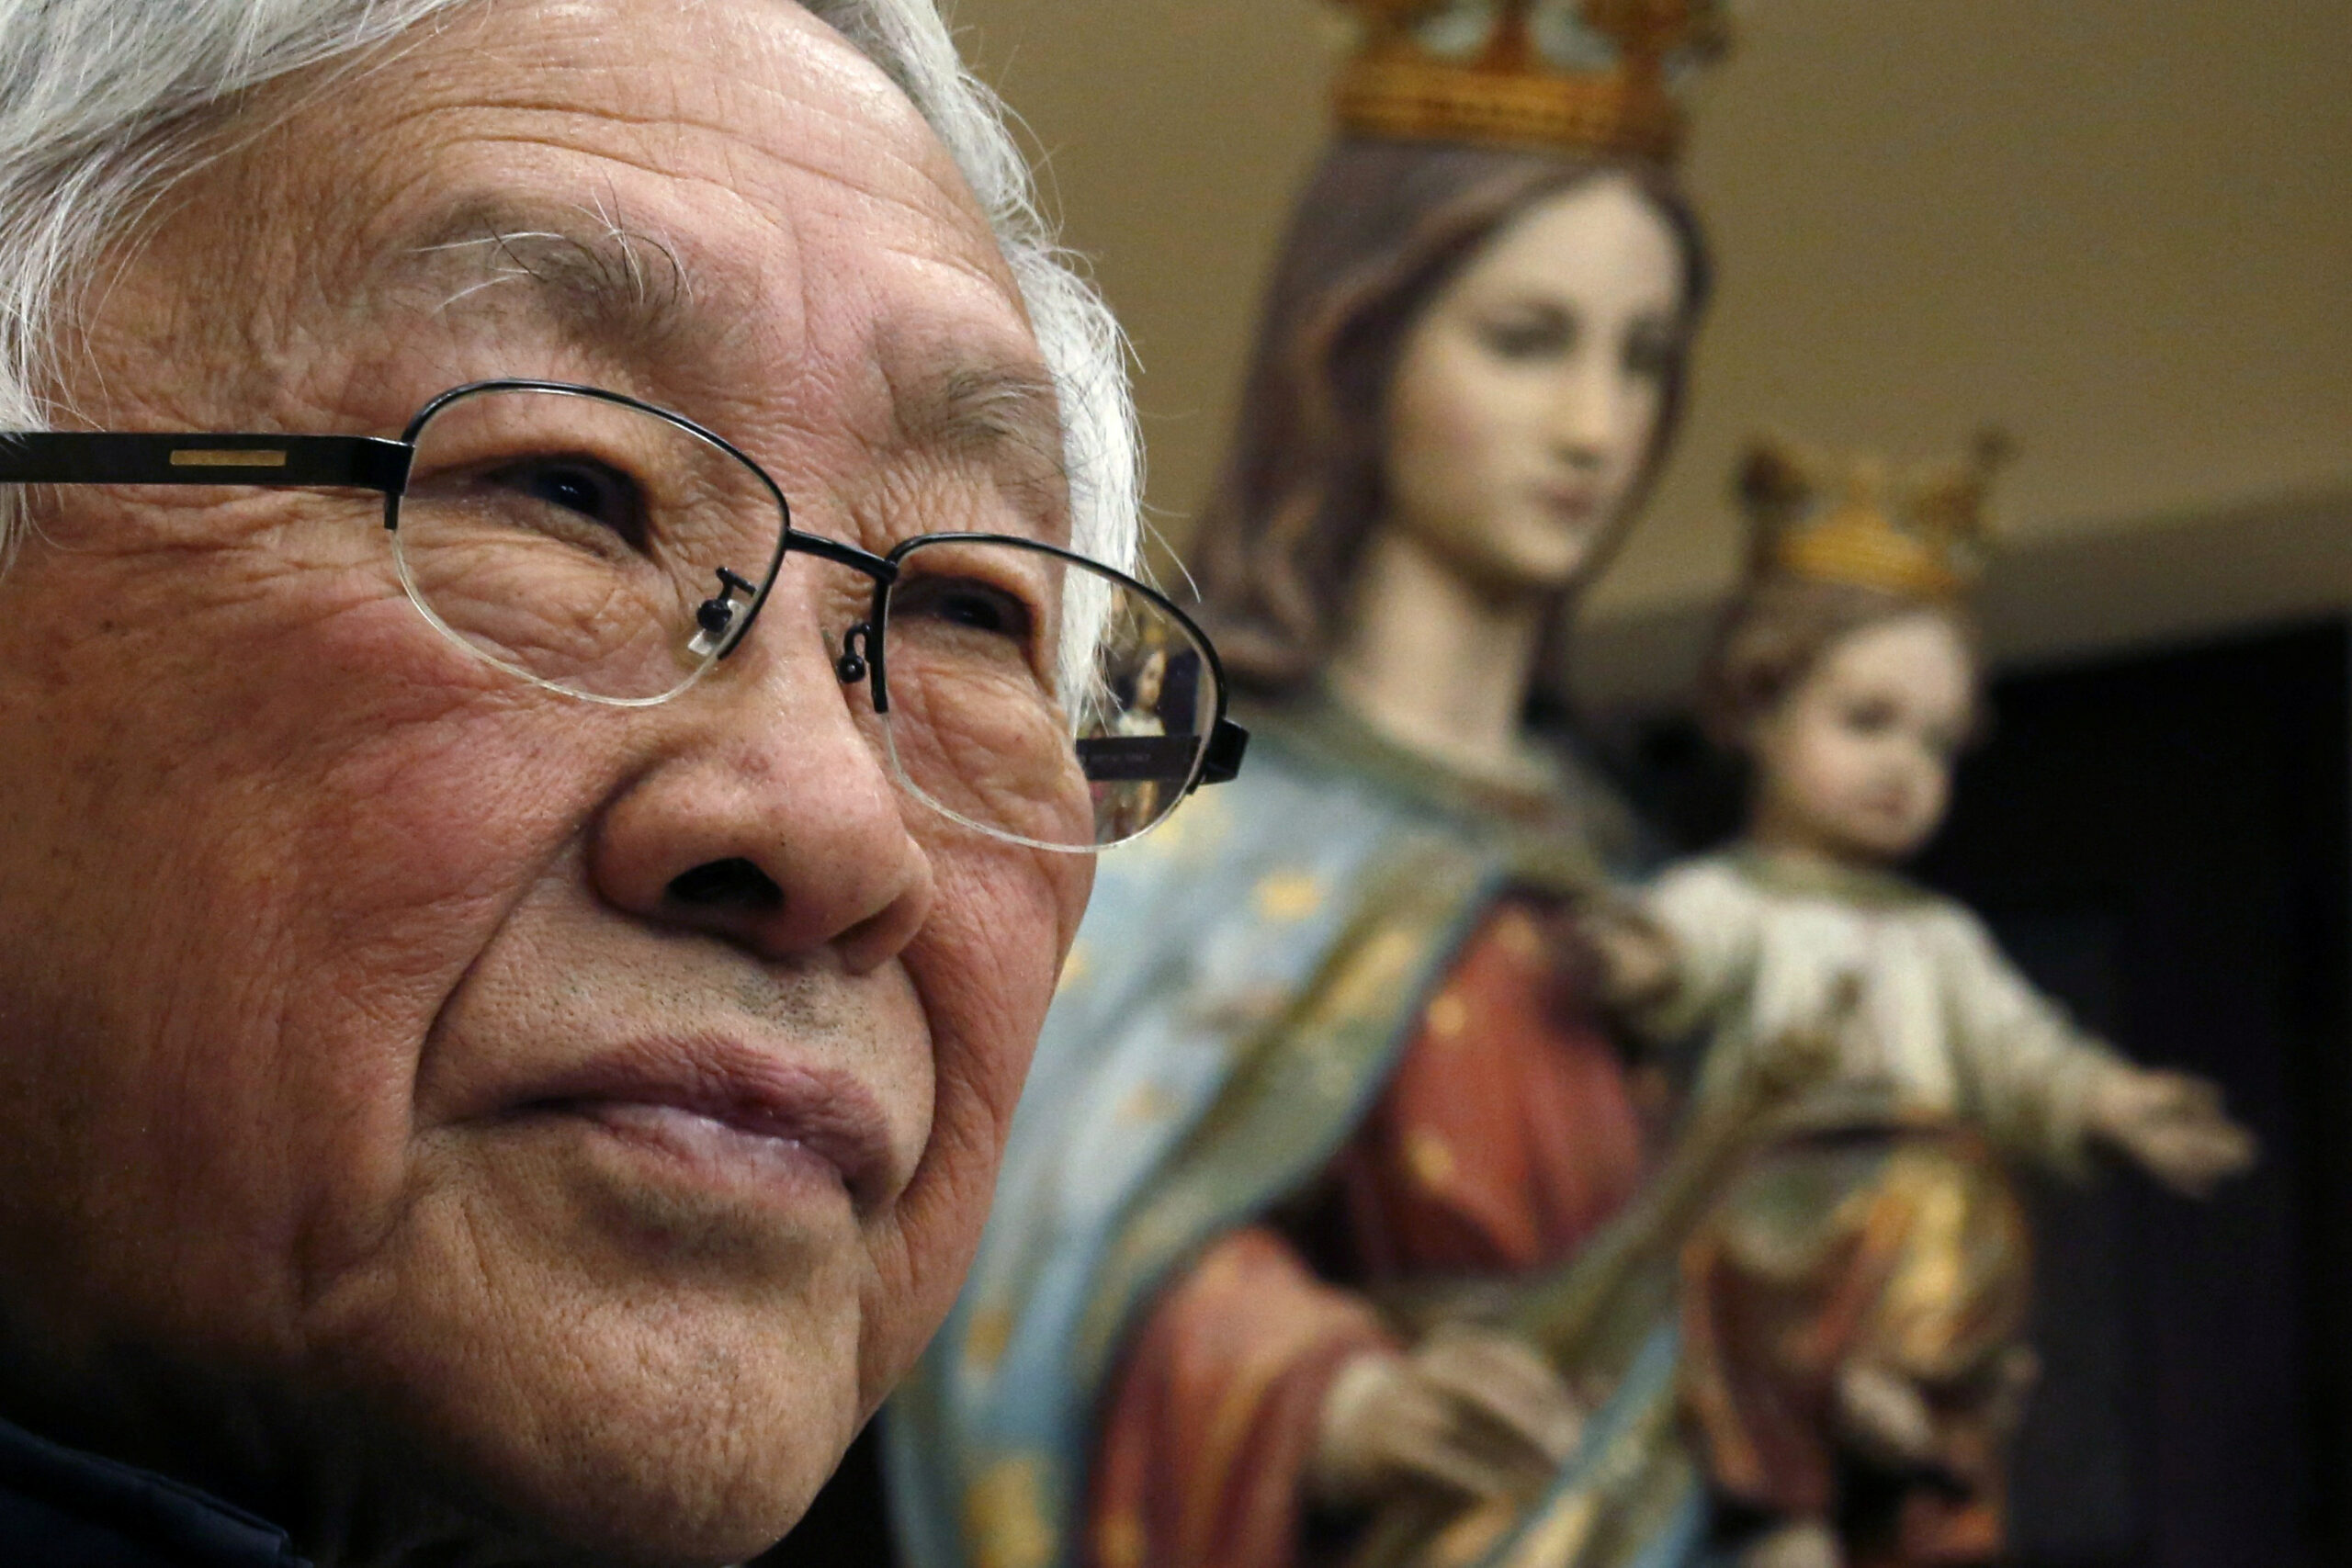 Cardeal pró-democracia detido em Hong Kong libertado sob caução